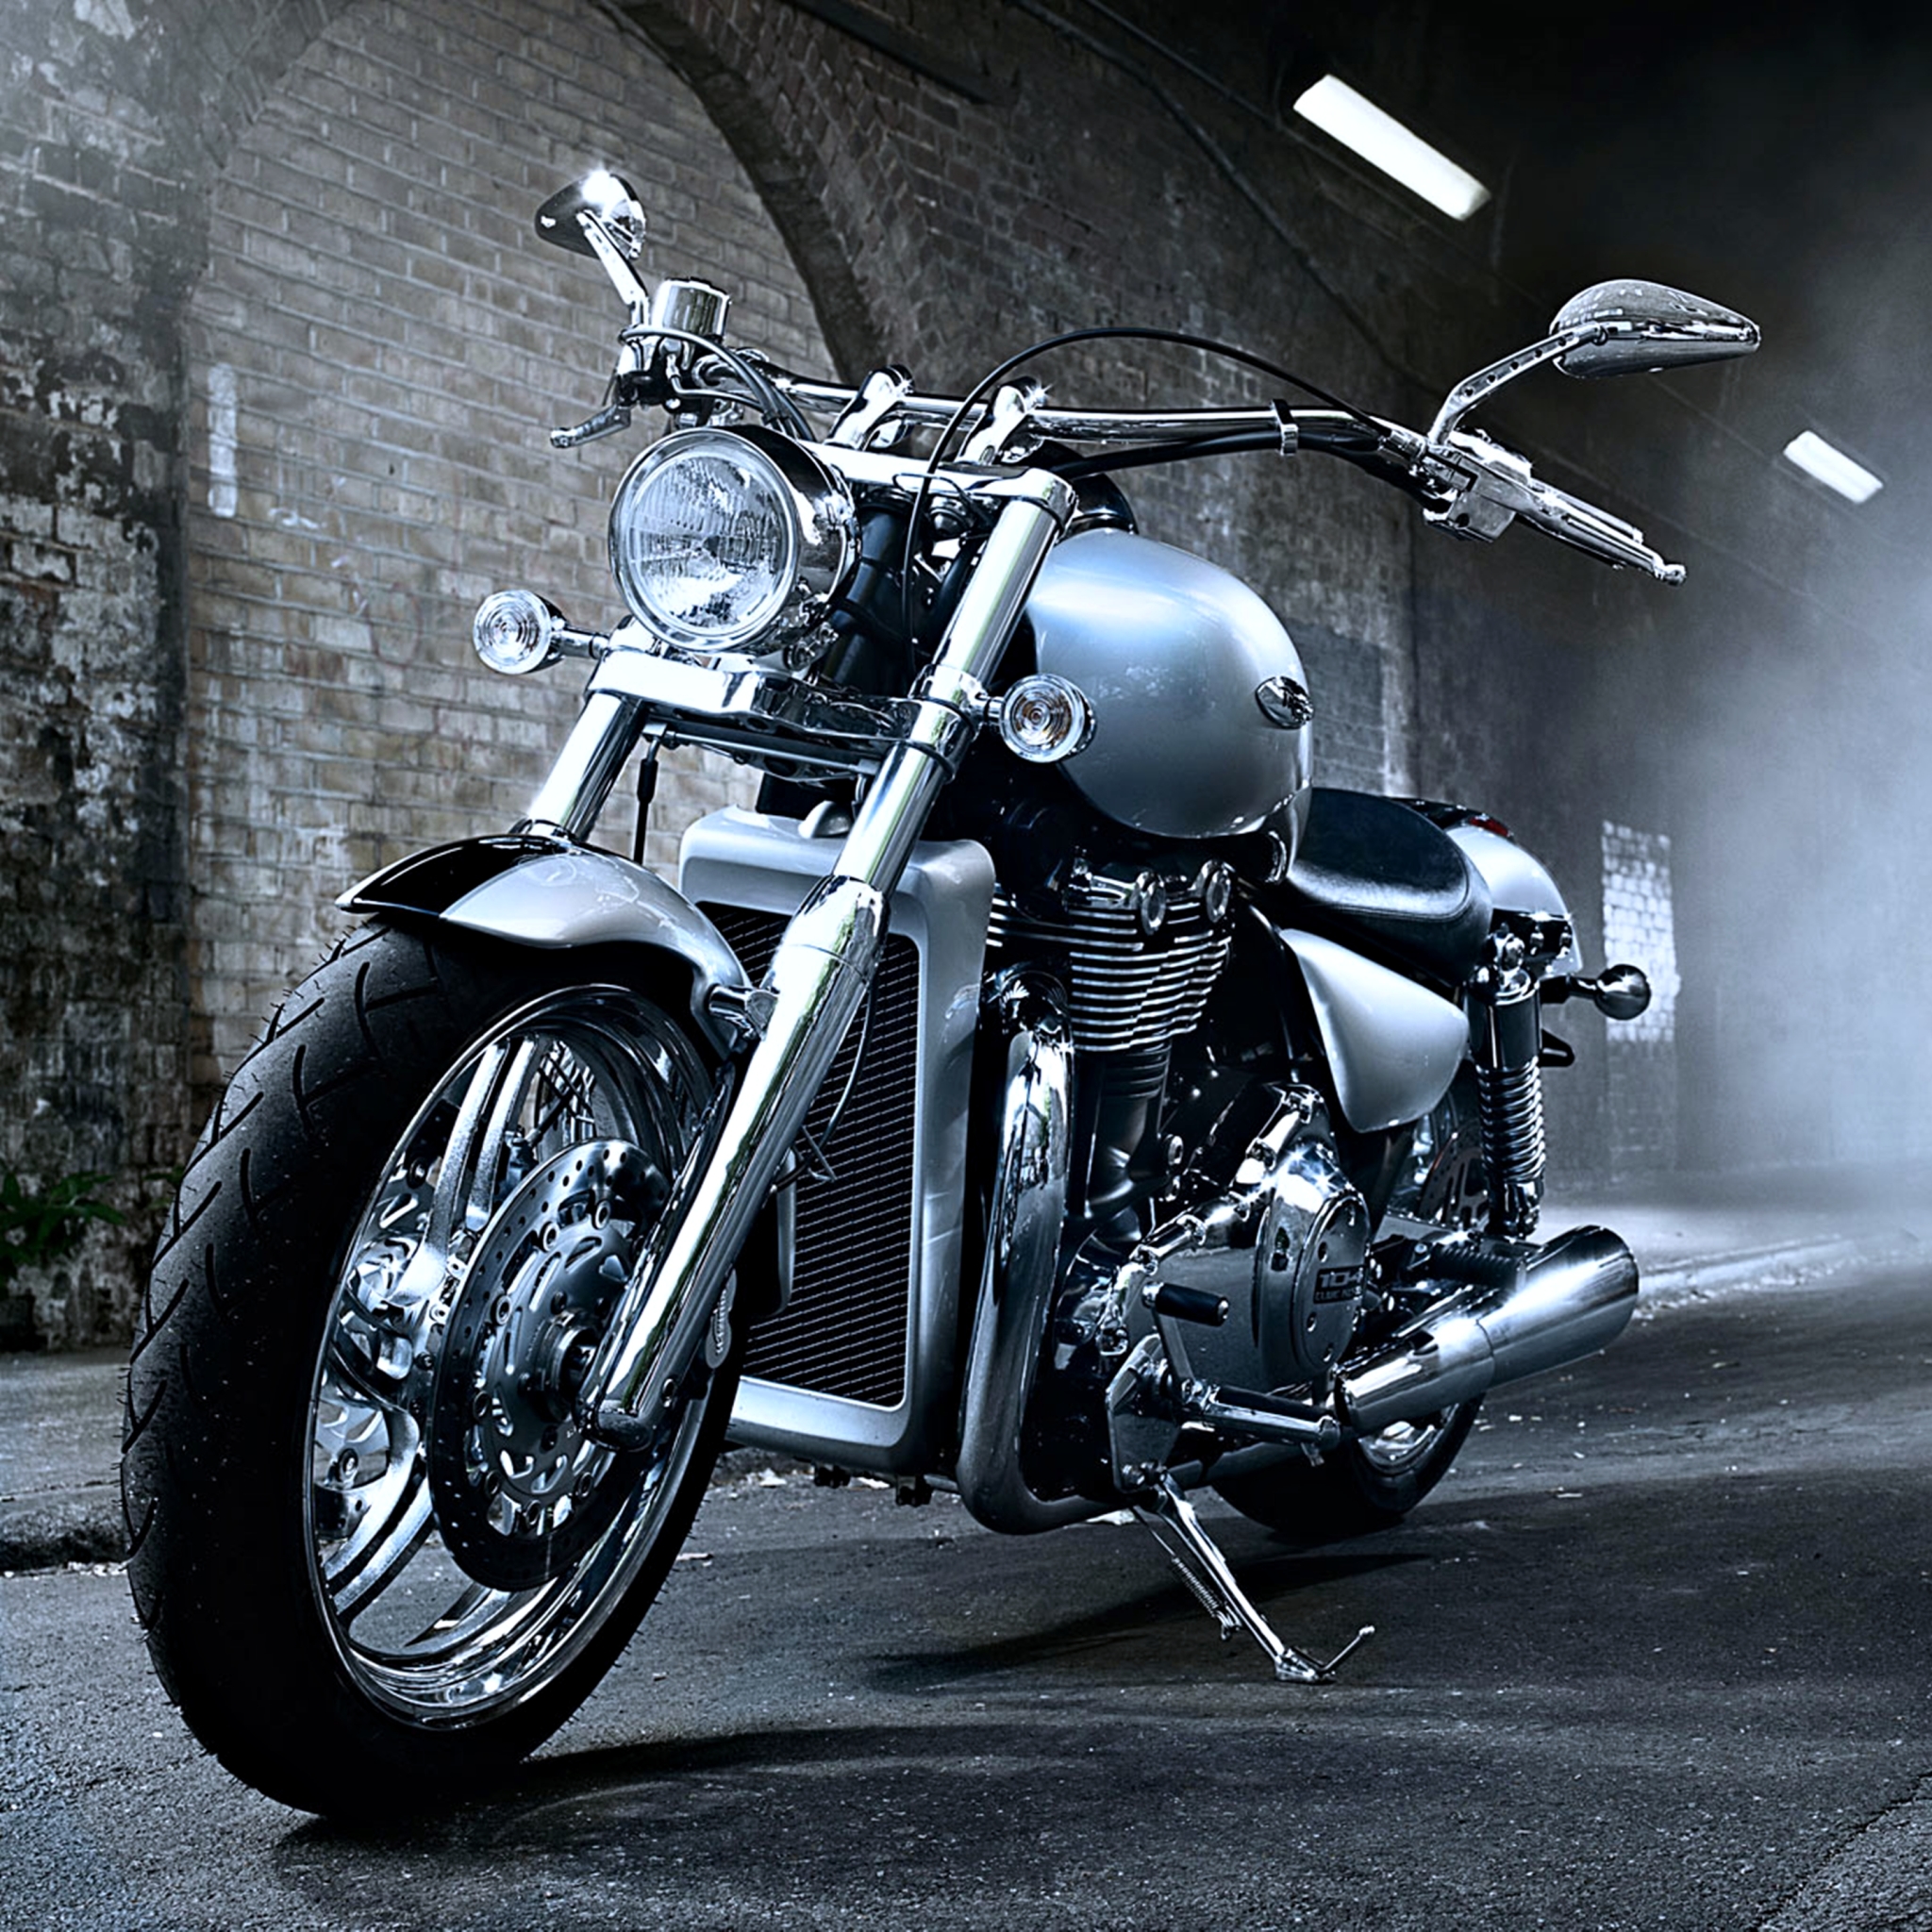 Descarga gratuita de fondo de pantalla para móvil de Motocicletas, Motocicleta, Bicicleta, Harley Davidson, Vehículos.